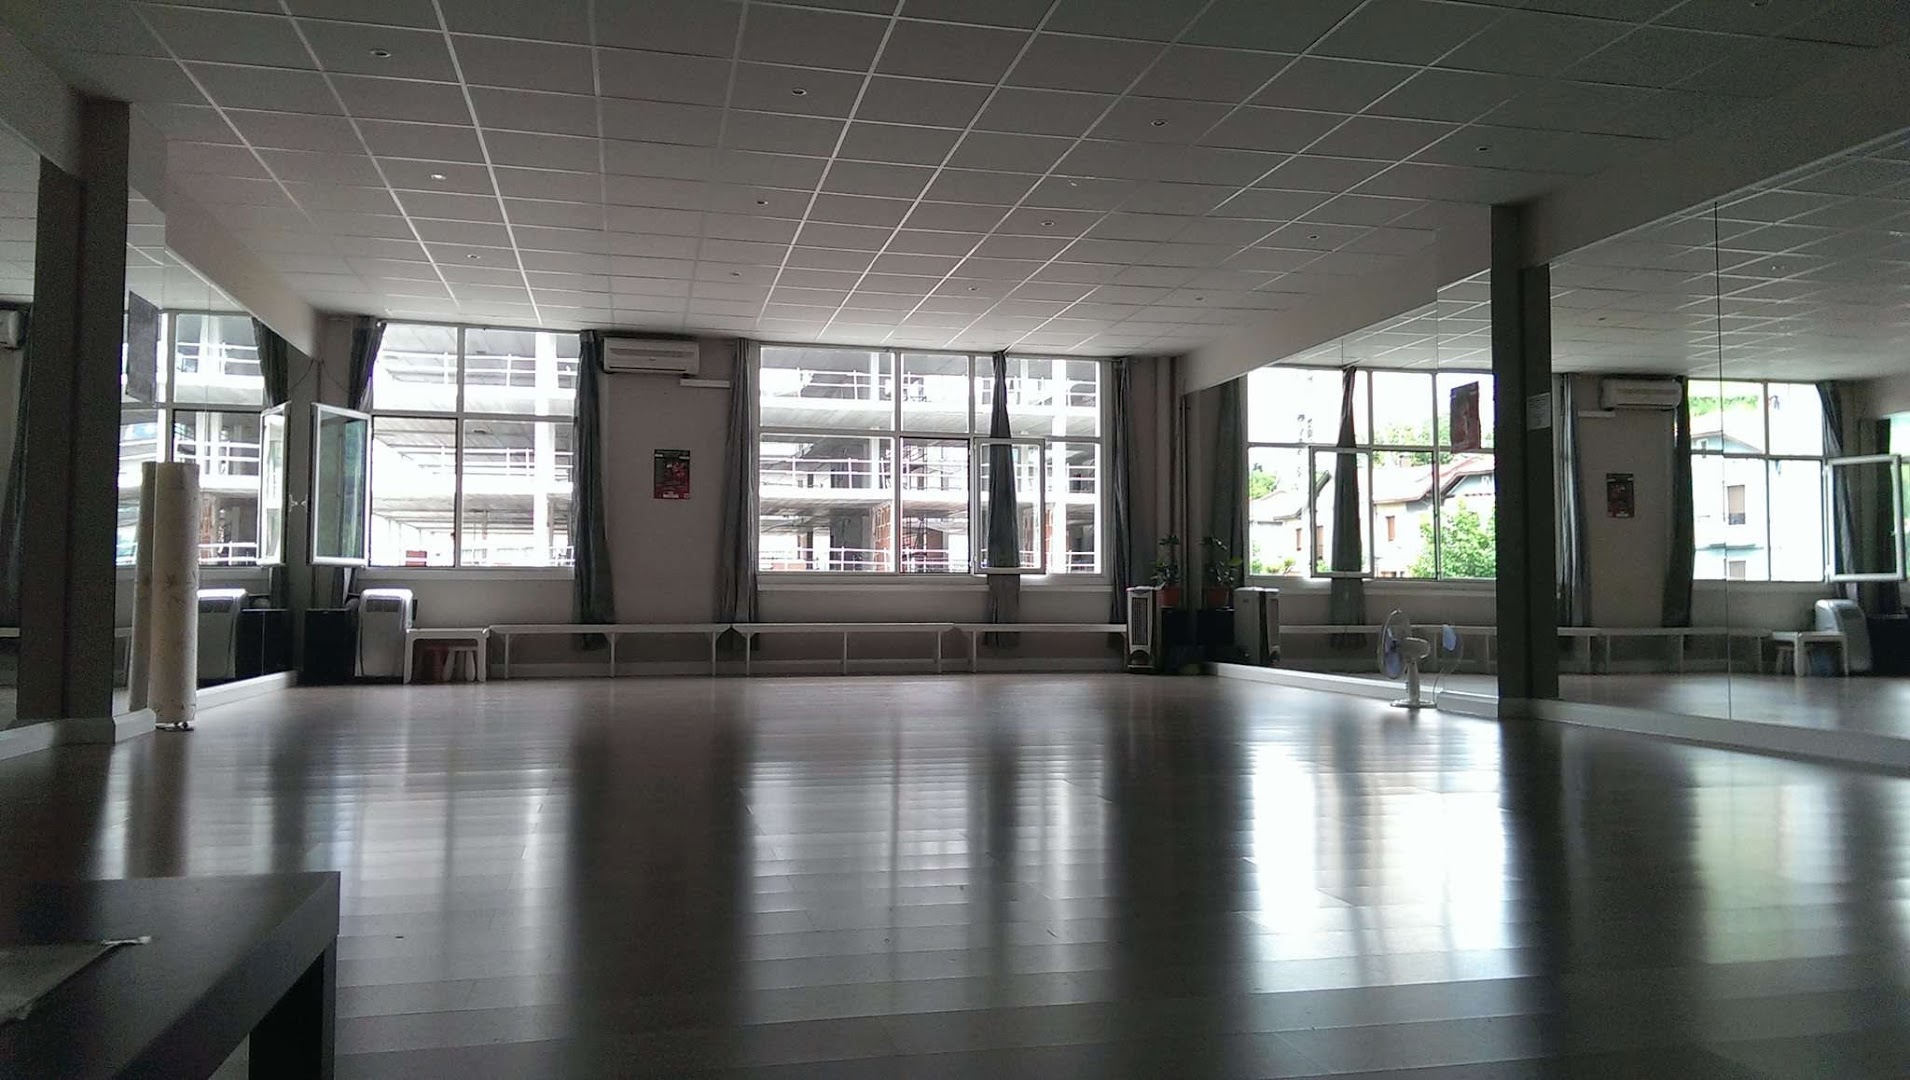 Escuela de baile BIZKAISALSA - Clases de salsa en Bilbao, Zouk, Bachata...